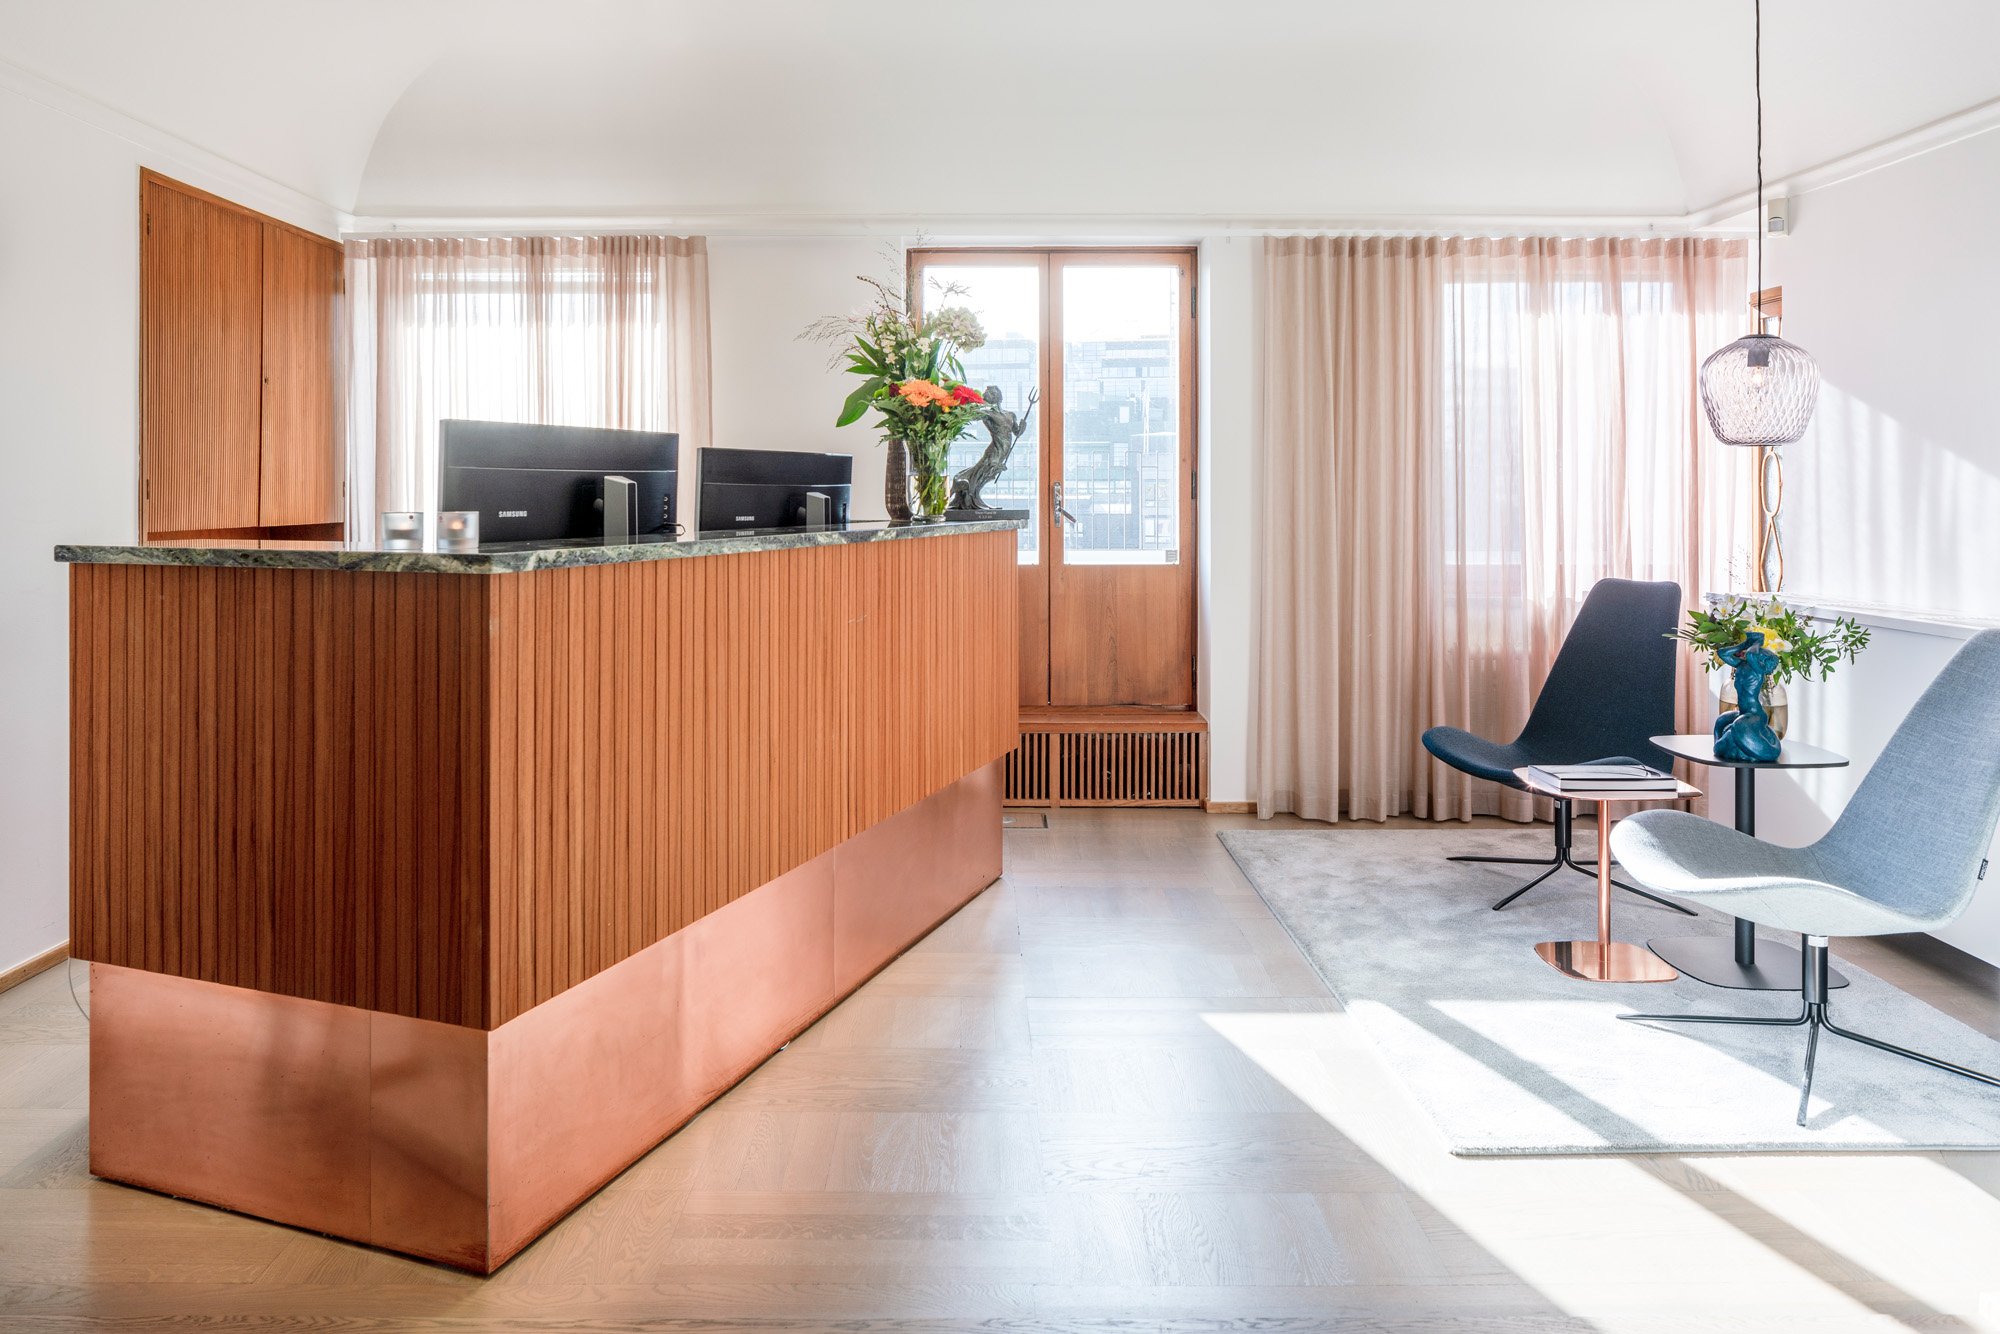 私募股权公司办公室——斯德哥尔摩|ART-Arrakis | 建筑室内设计的创新与灵感